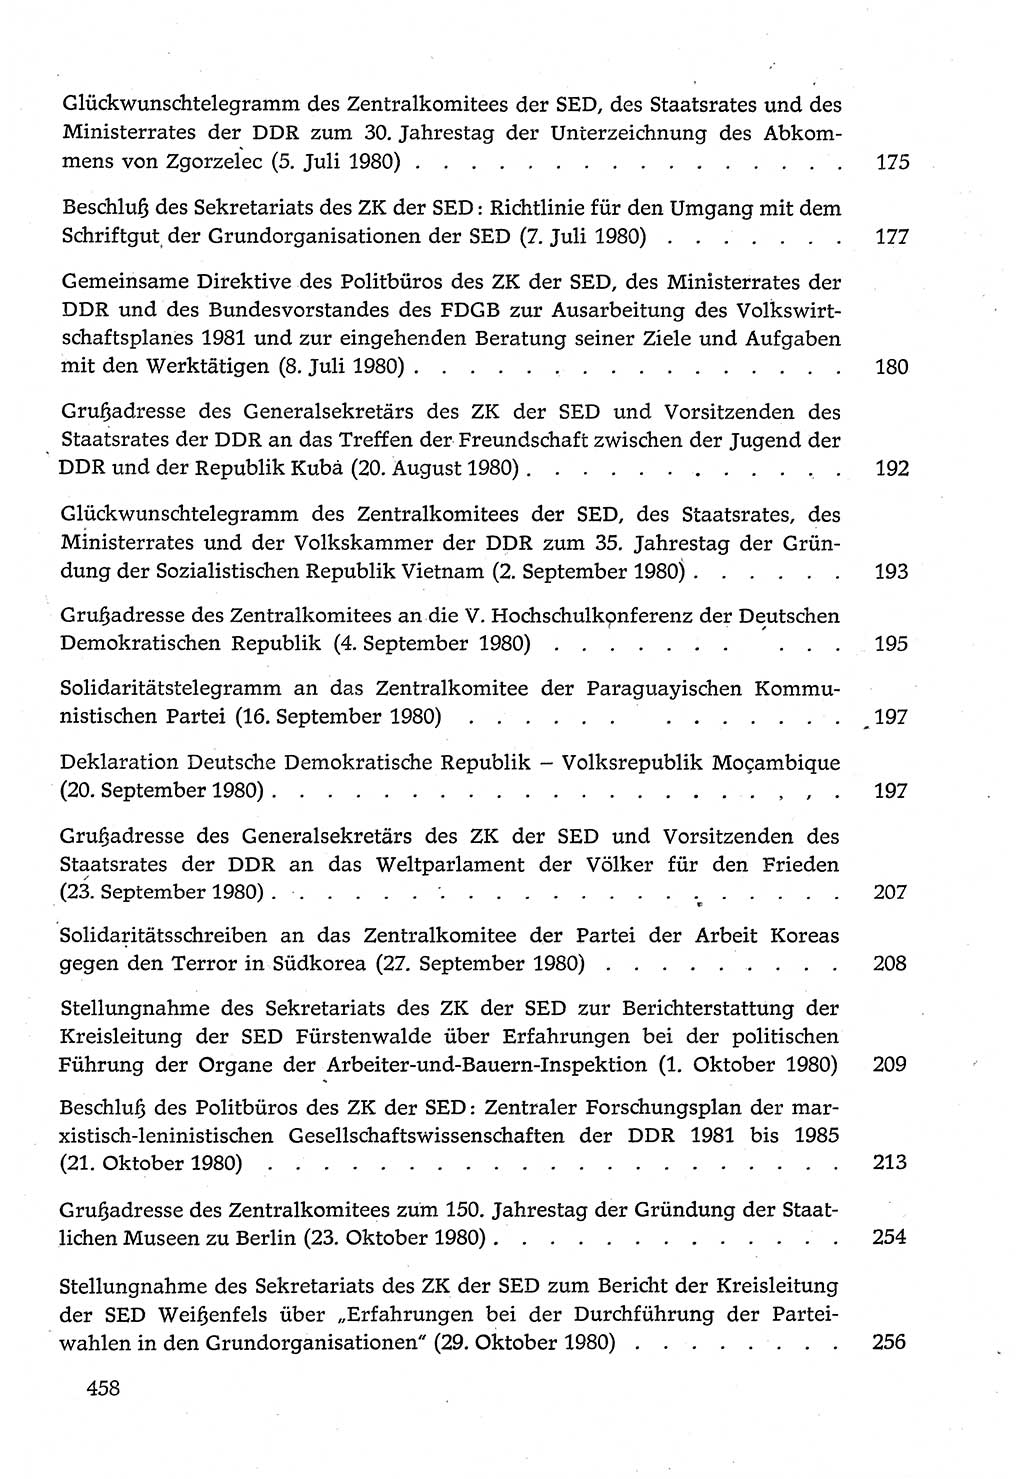 Dokumente der Sozialistischen Einheitspartei Deutschlands (SED) [Deutsche Demokratische Republik (DDR)] 1980-1981, Seite 458 (Dok. SED DDR 1980-1981, S. 458)